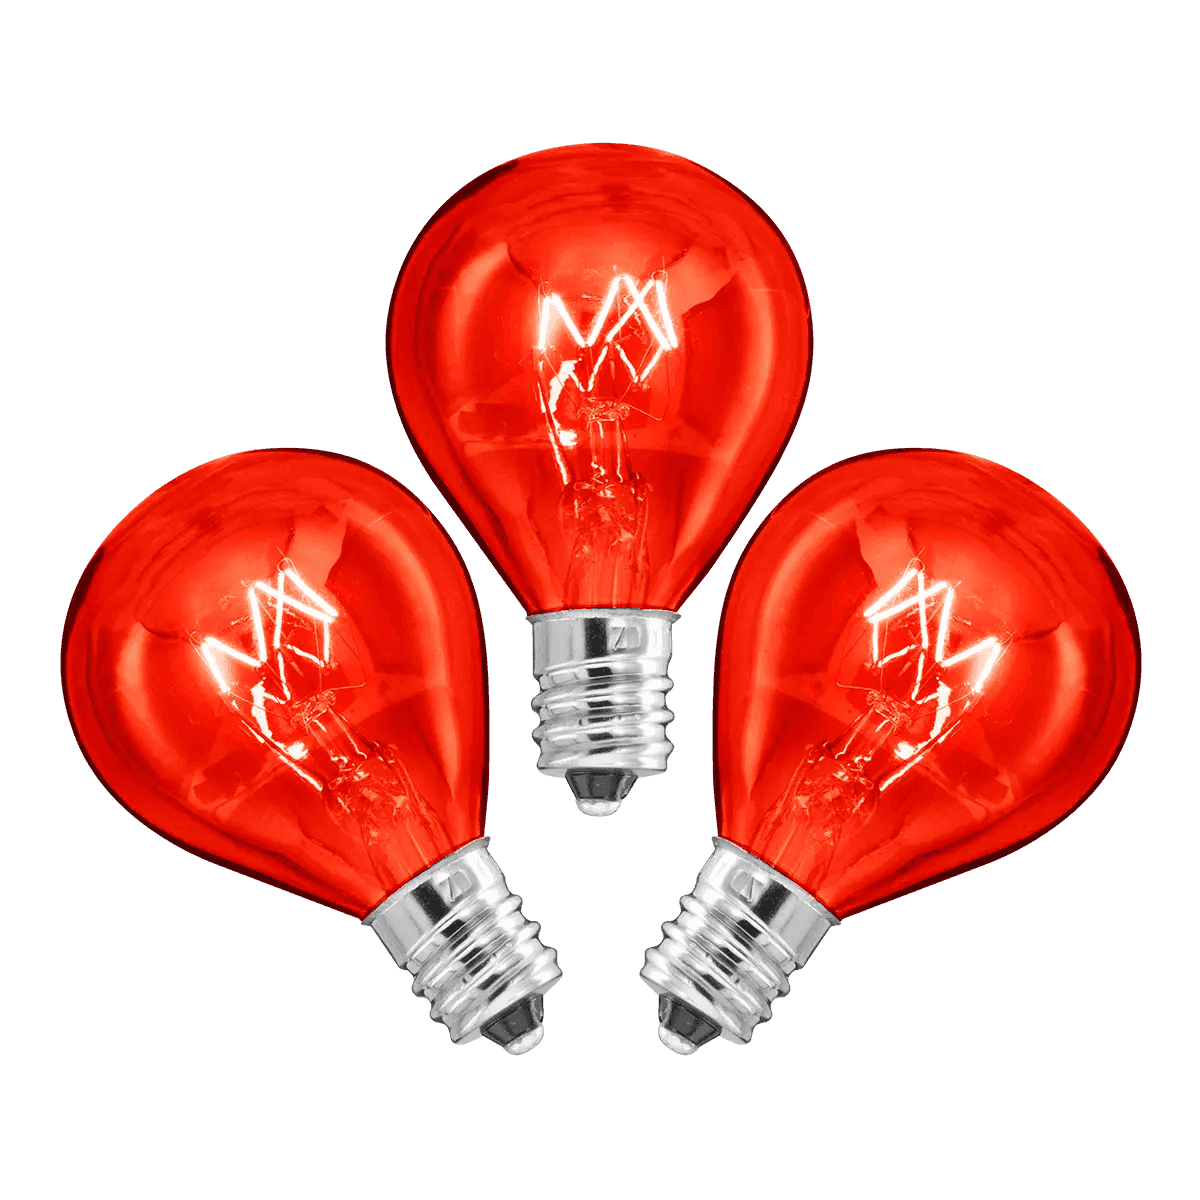 20 Watt Light Bulbs - 3 Pack – Red